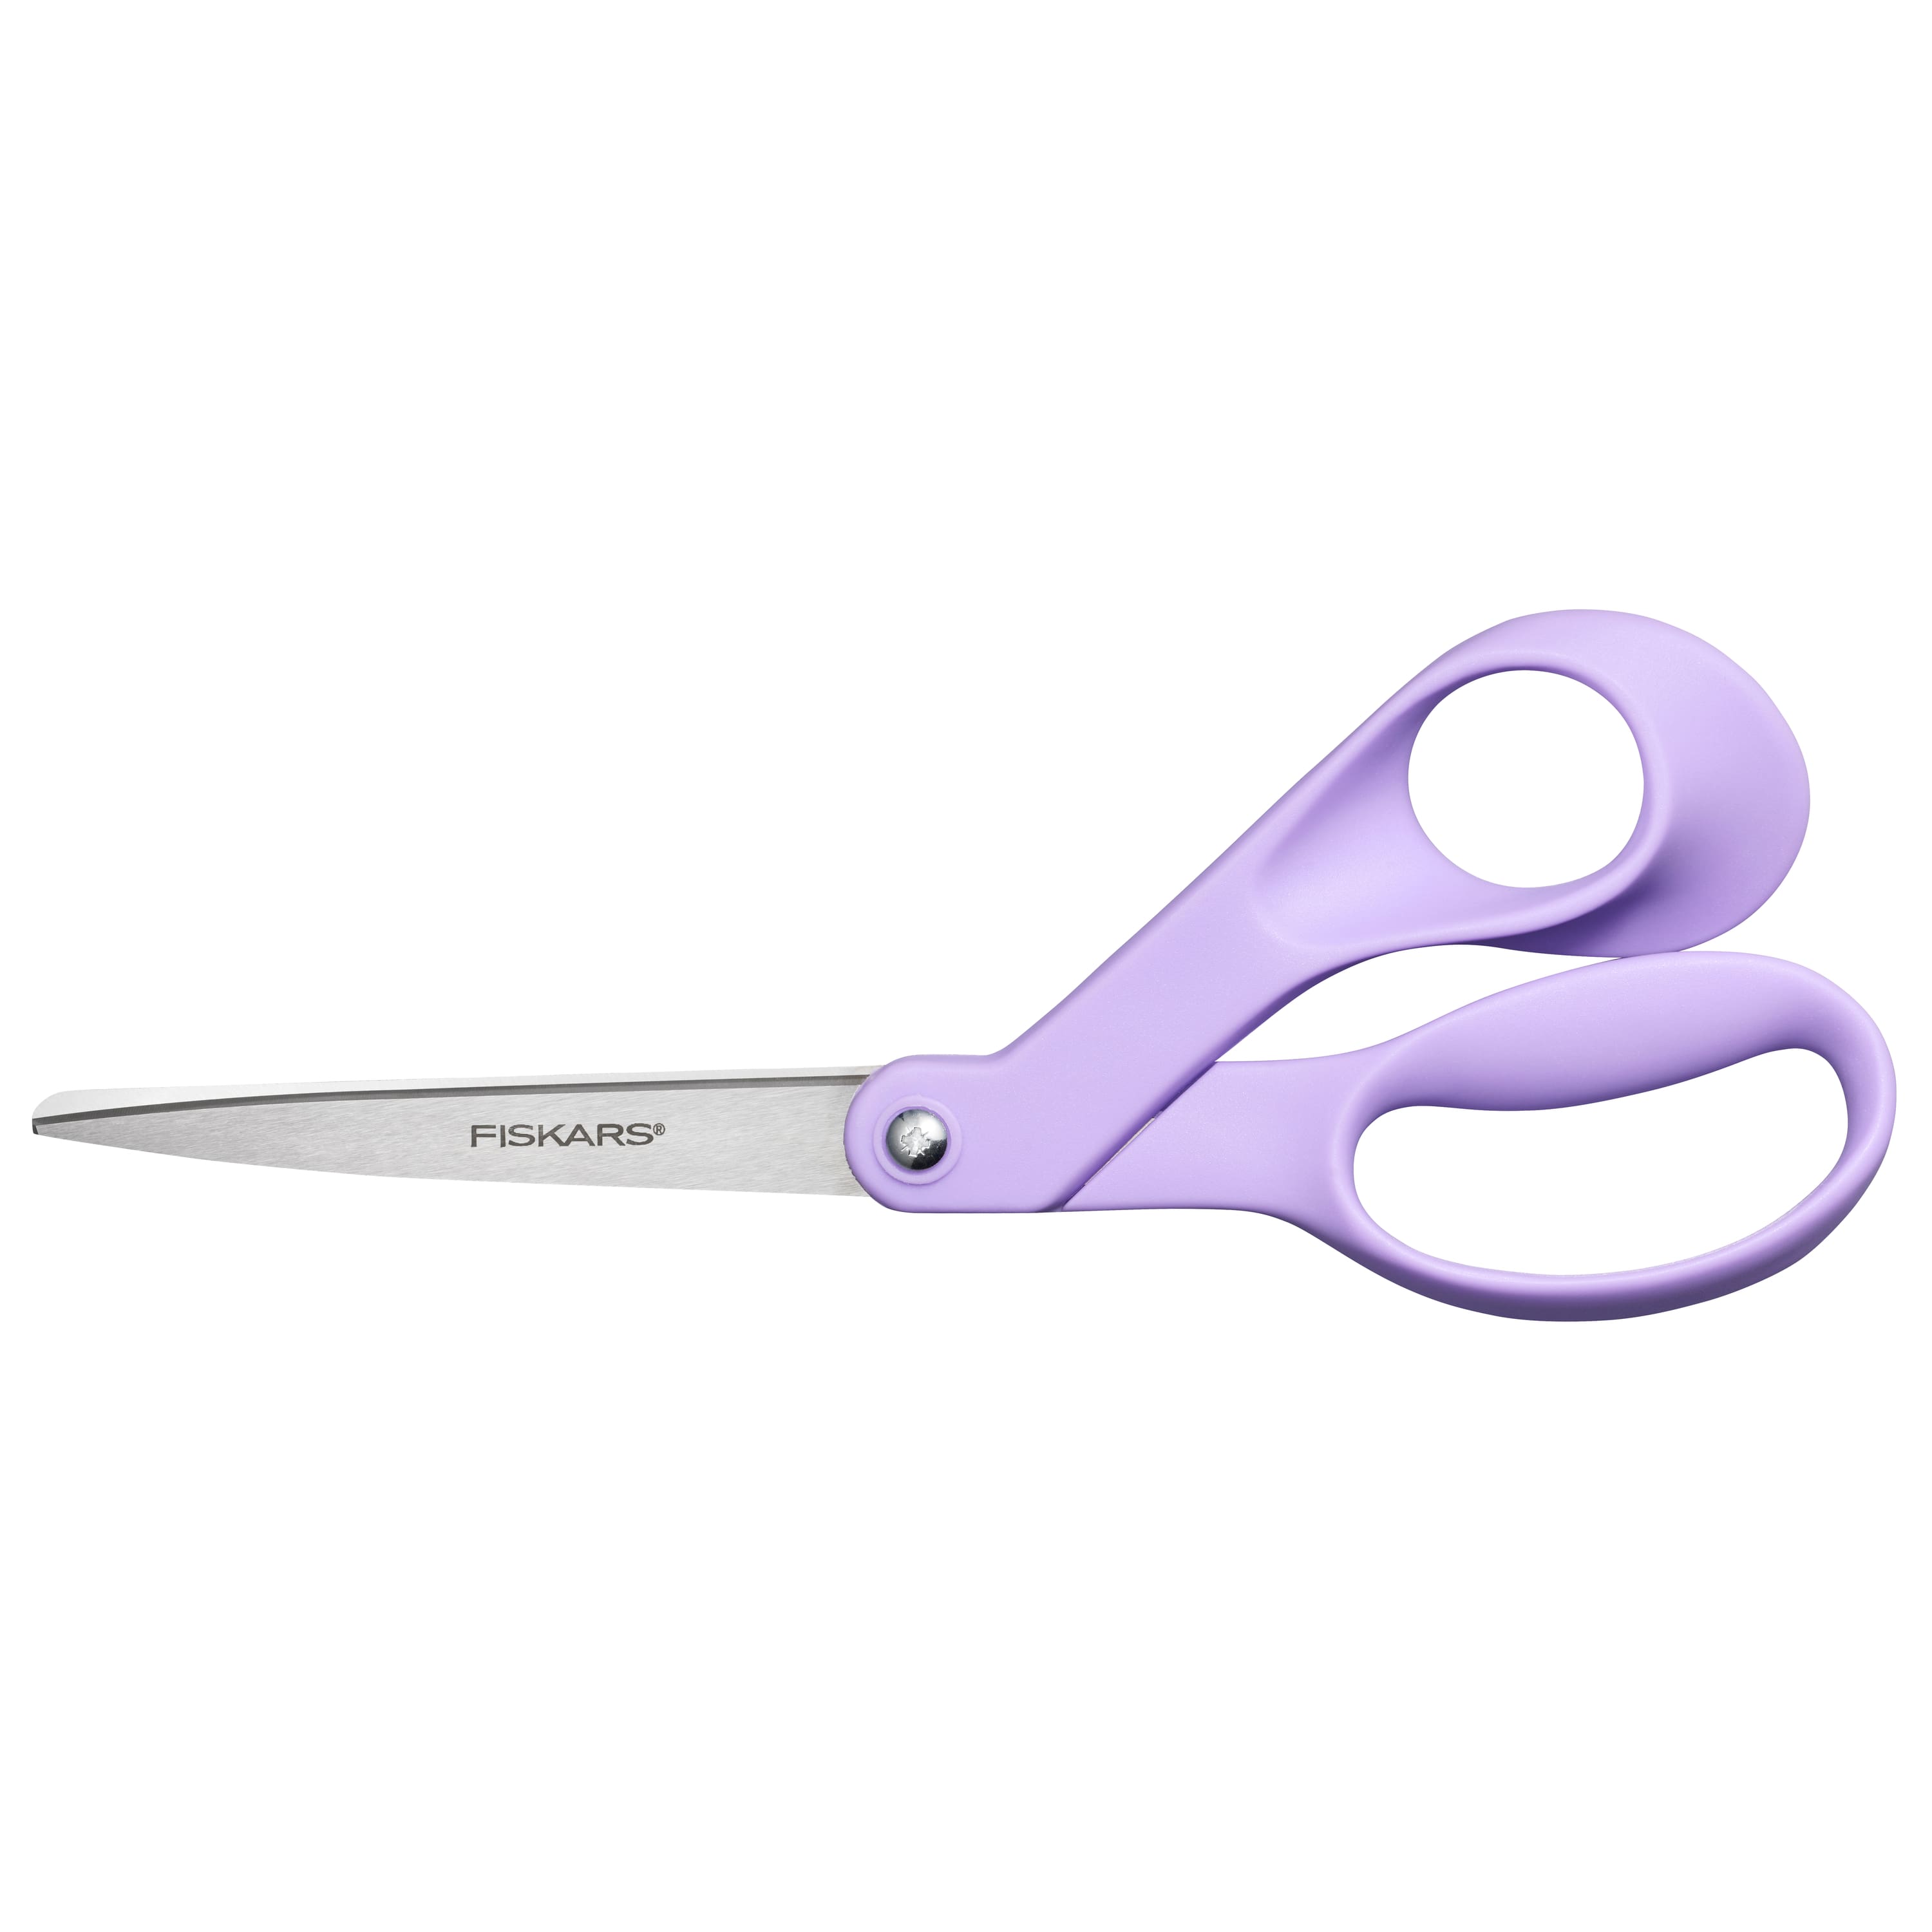 Fiskars 1067374 Ultra Lilac Purple Folding Scissors —